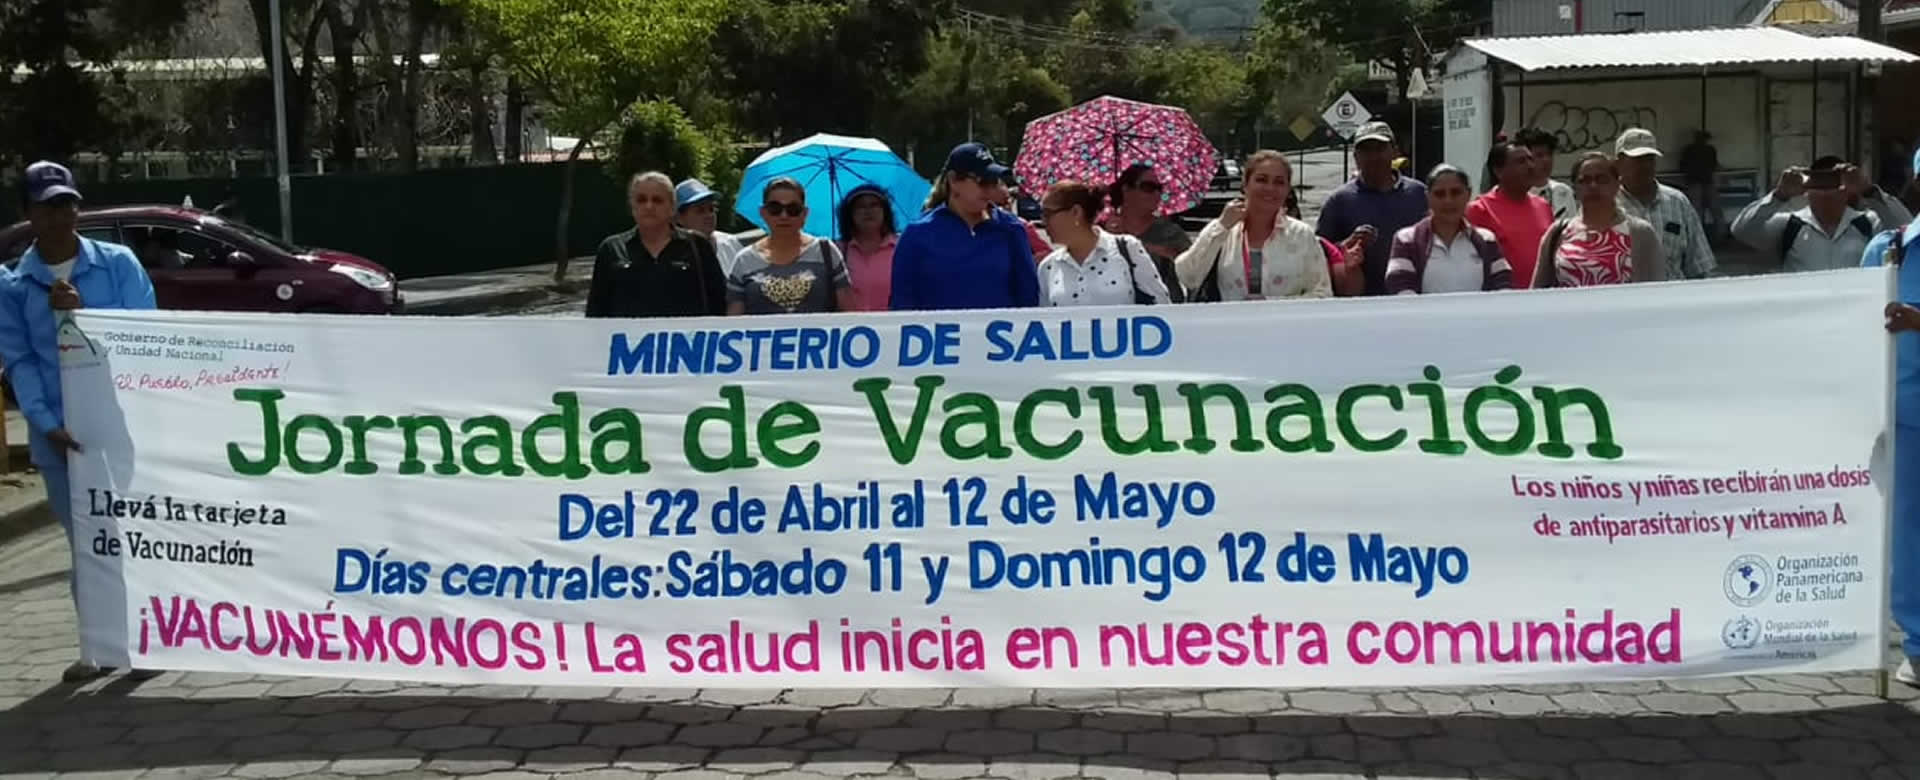 Jinotega: Ministerio de Salud realiza lanzamiento de jornada de vacunación